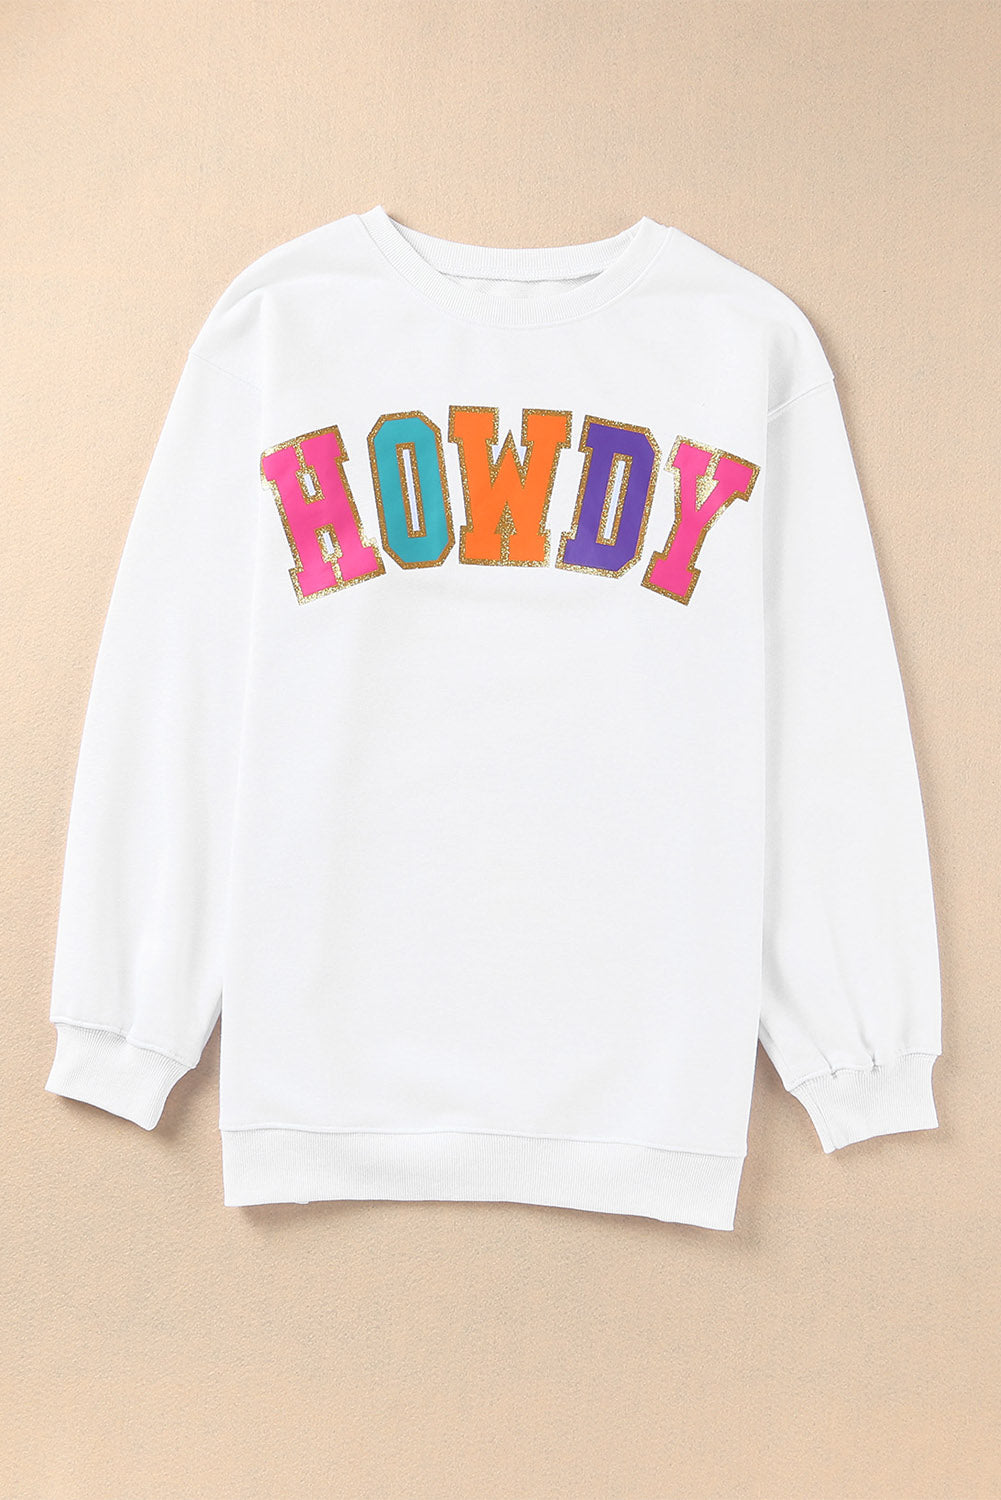 Howdy Letter Sweatshirt Size XL